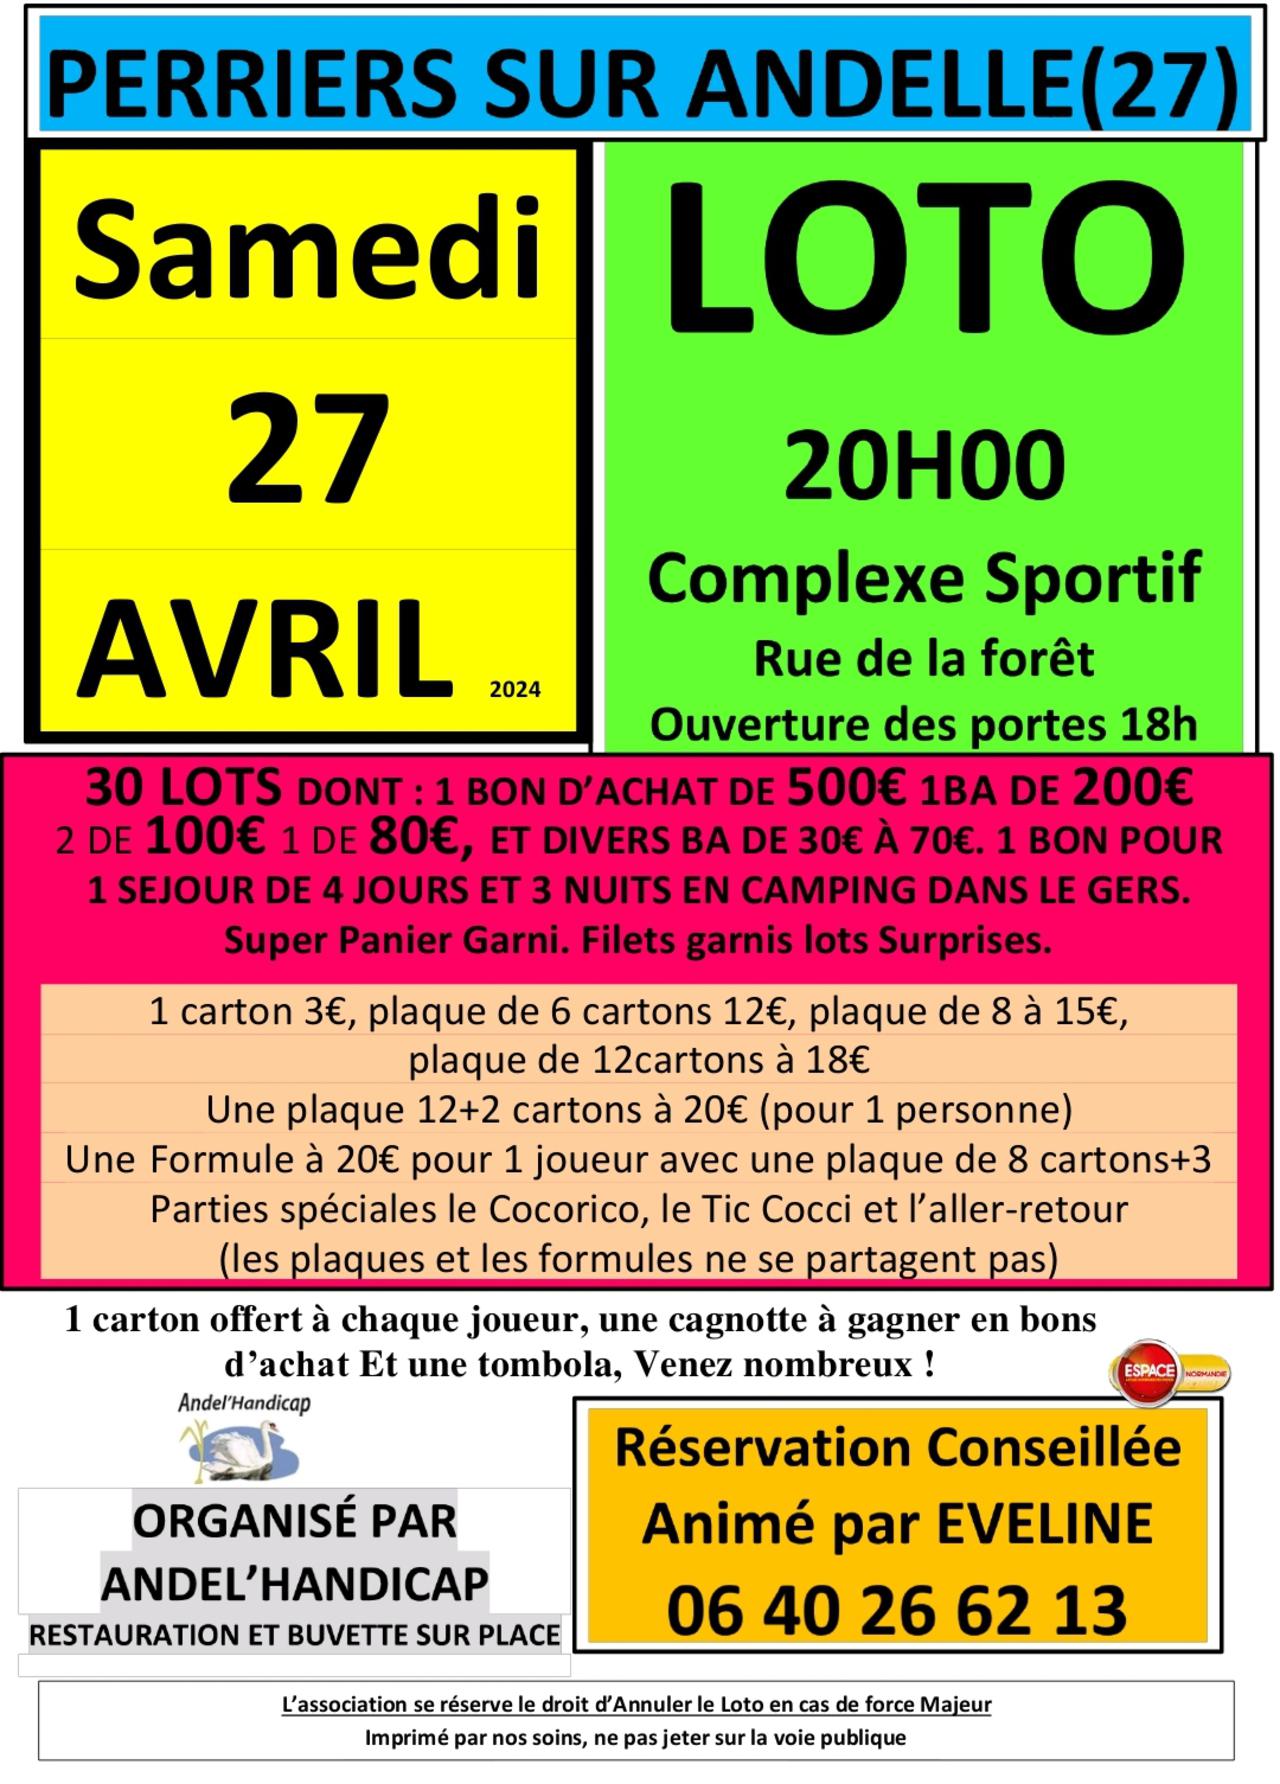 LOTO à Perriers-sur-Andelle, Samedi 27 Avril, avec Espace !